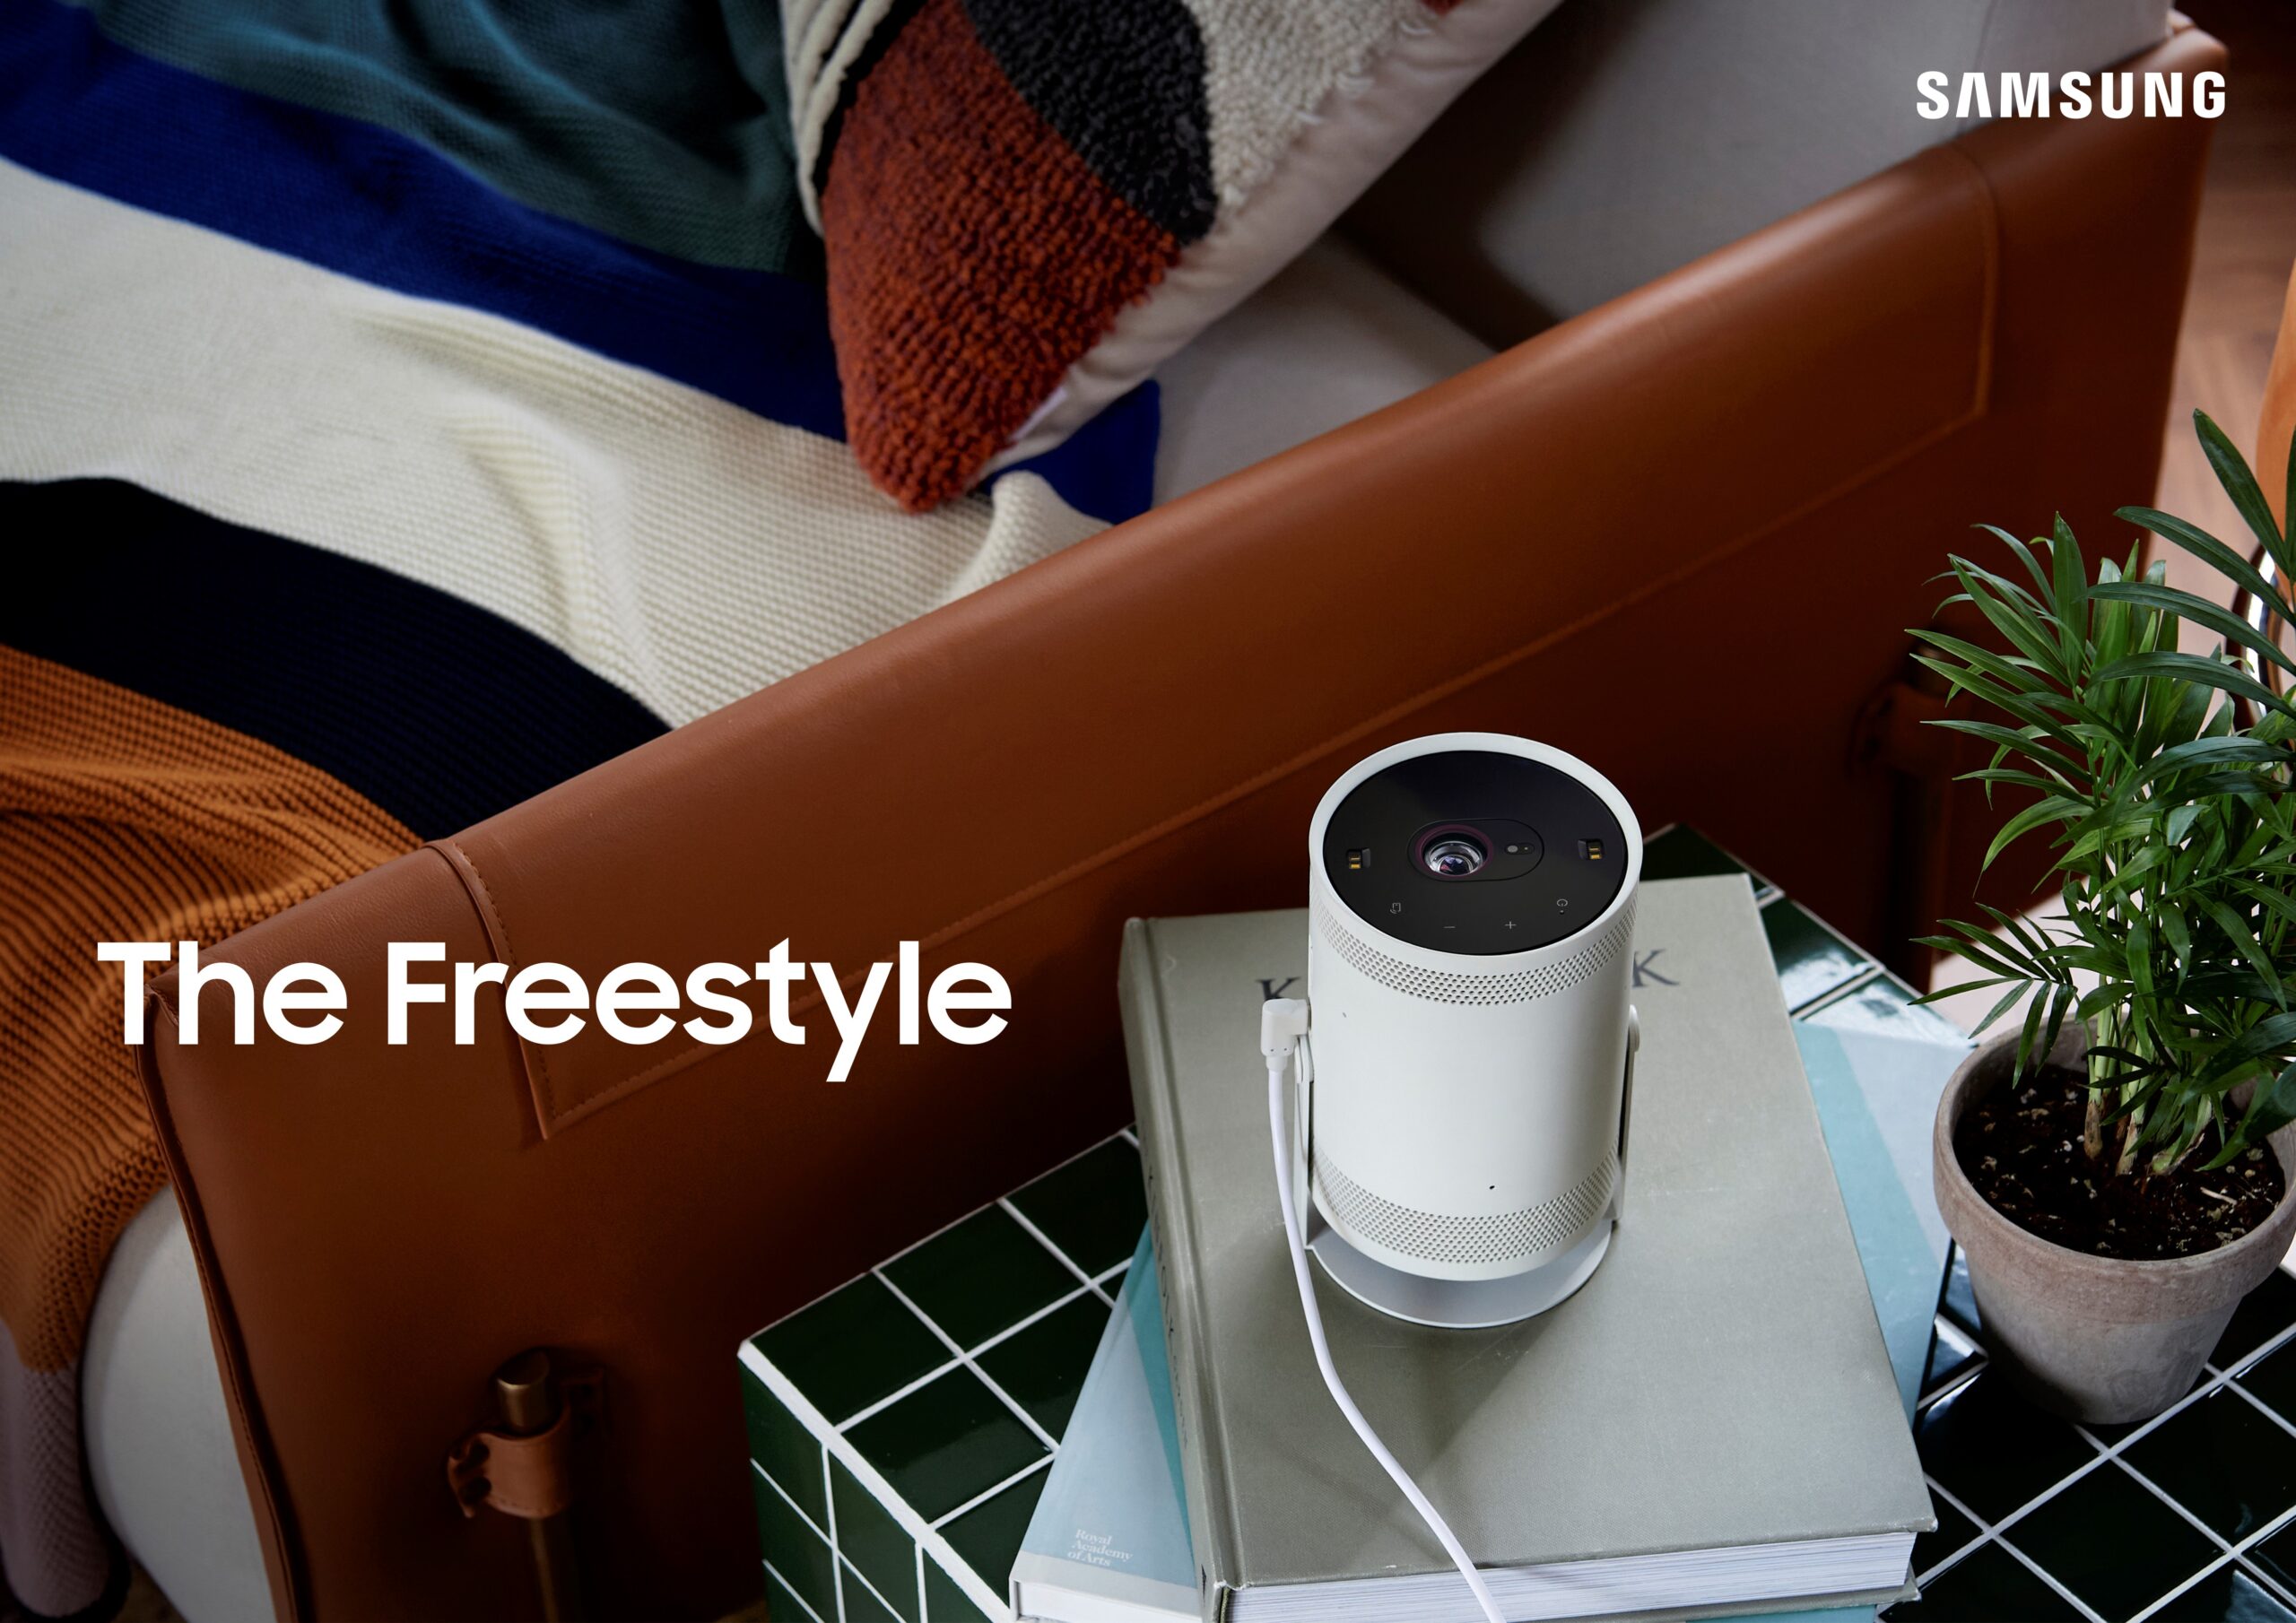 Samsung presenta The Freestyle en Chile, su nuevo proyector inteligente